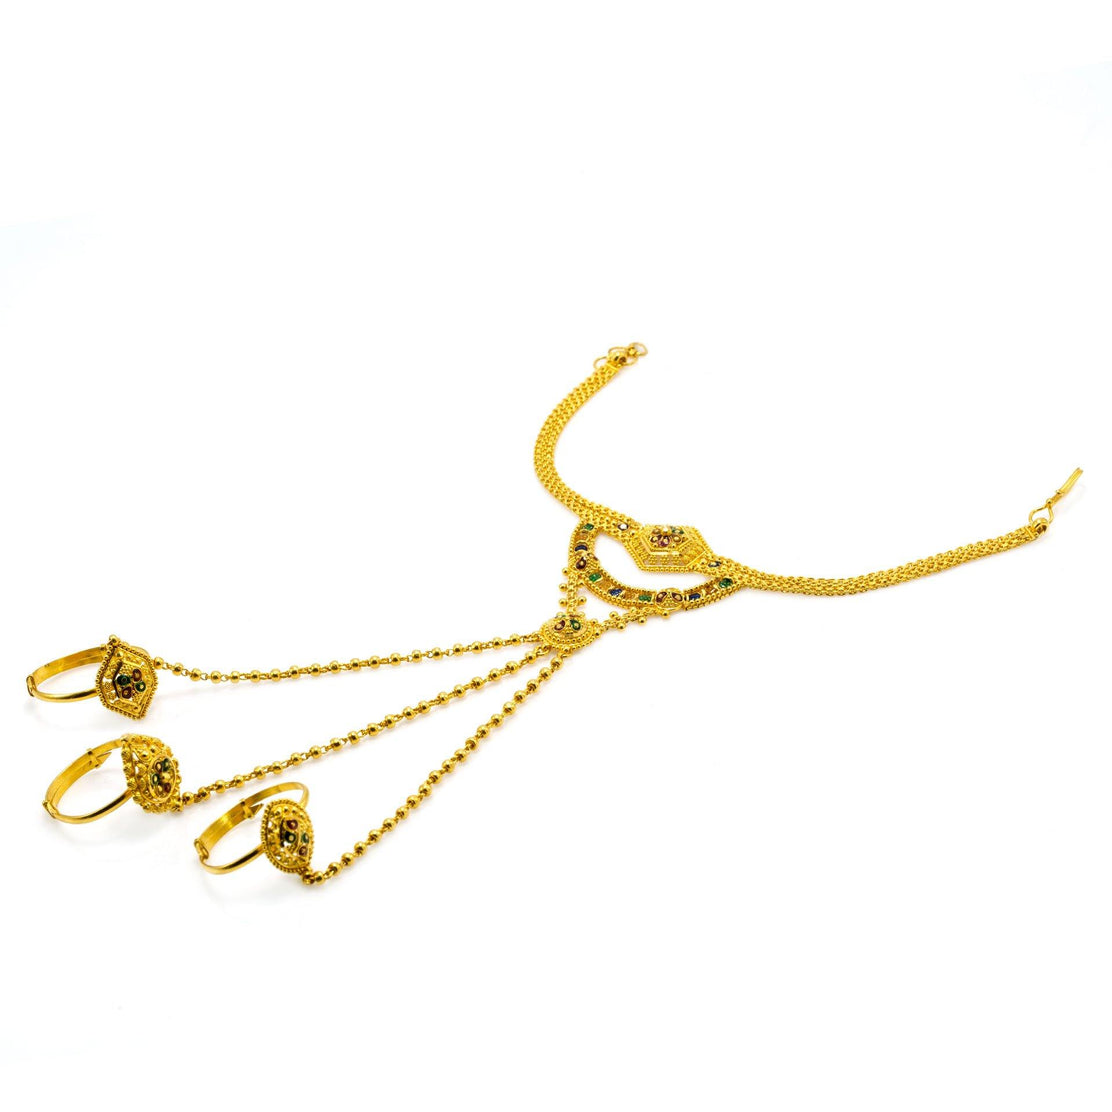 Boho Cobweb Finger Ring Chain Bracelet – ArtGalleryZen